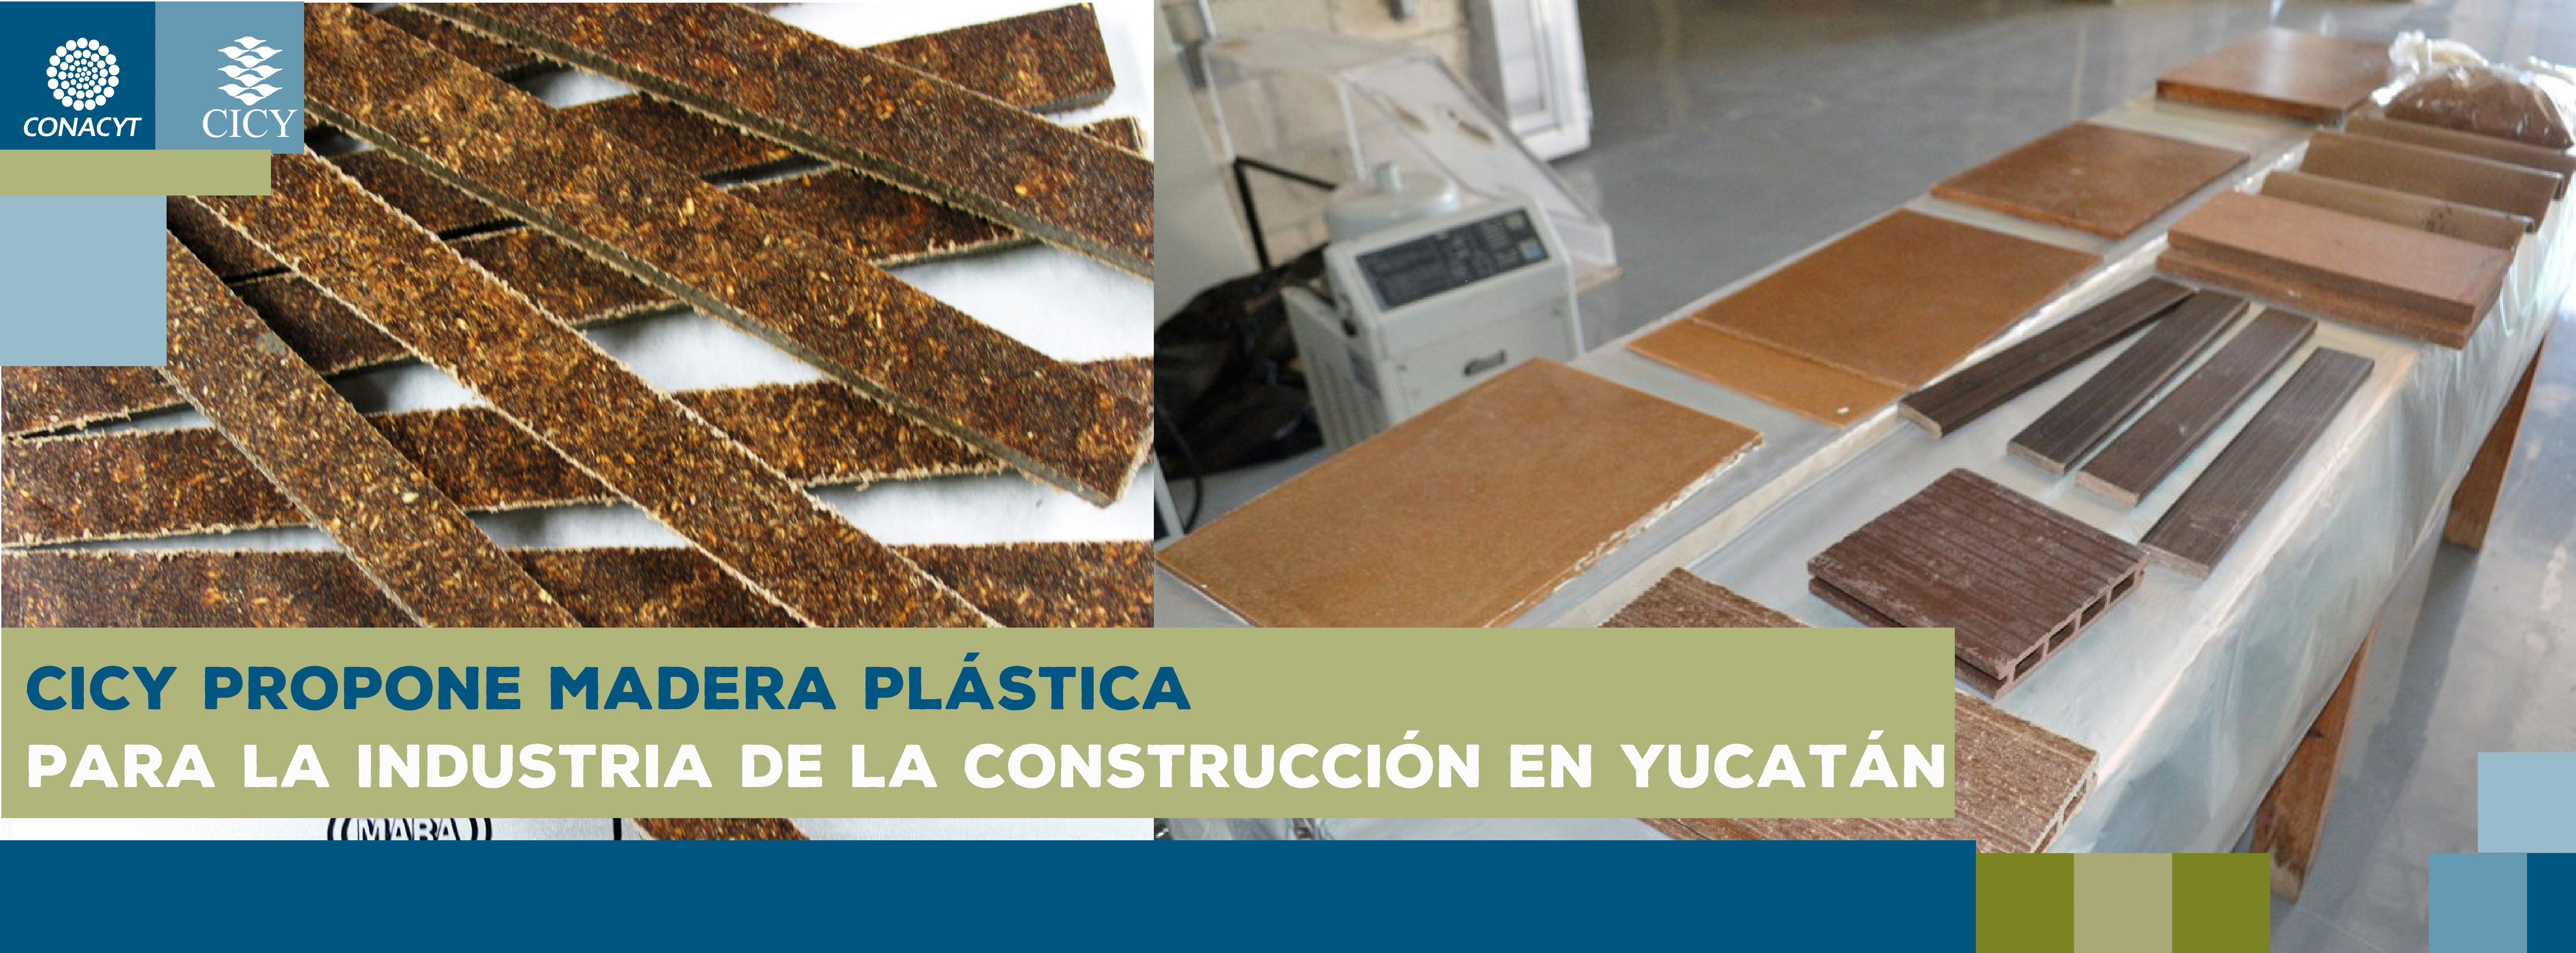 CICY propone madera plástica para la industria de la construcción en Yucatán